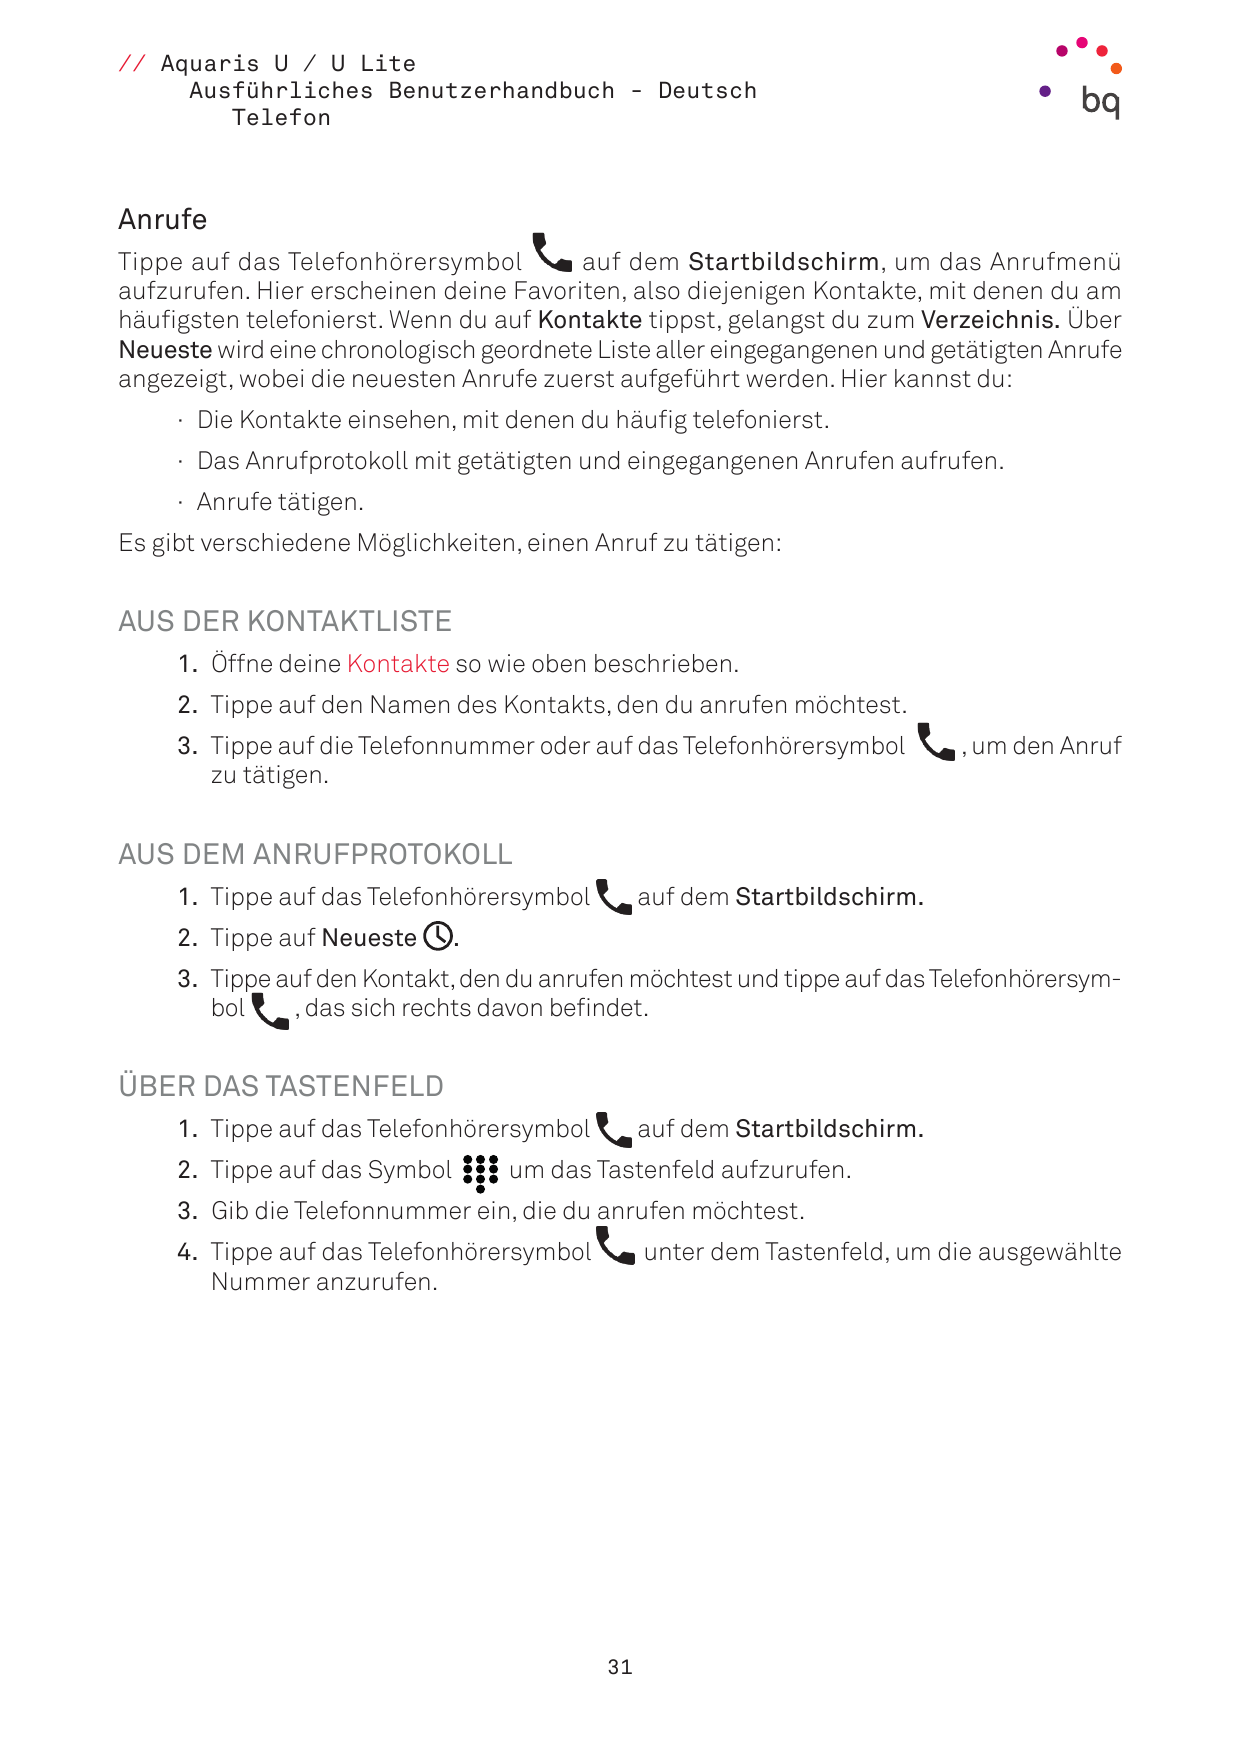 // Aquaris U / U LiteAusführliches Benutzerhandbuch - DeutschTelefonAnrufeTippe auf das Telefonhörersymbolauf dem Startbildschir